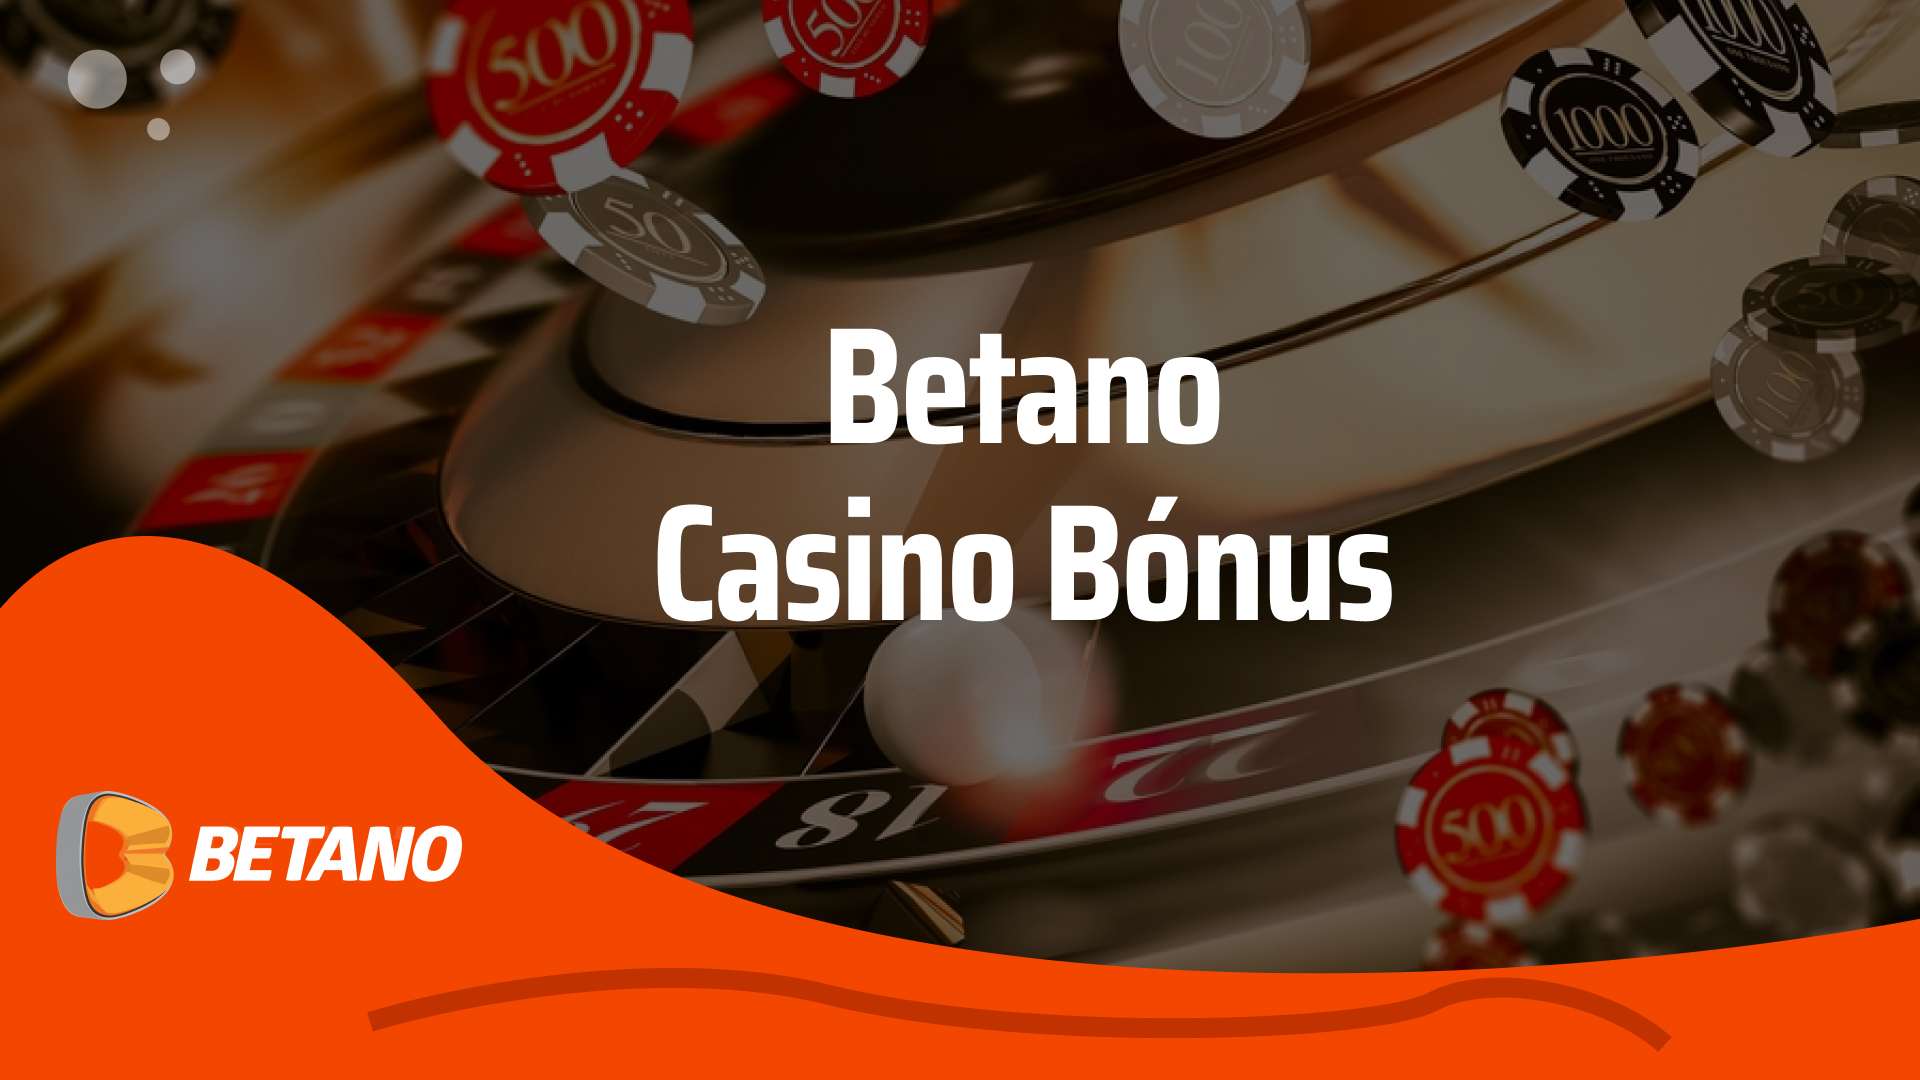 Betano casino bónus: 100% até 200€ + 50 Rodadas grátis com VIPMAXPT